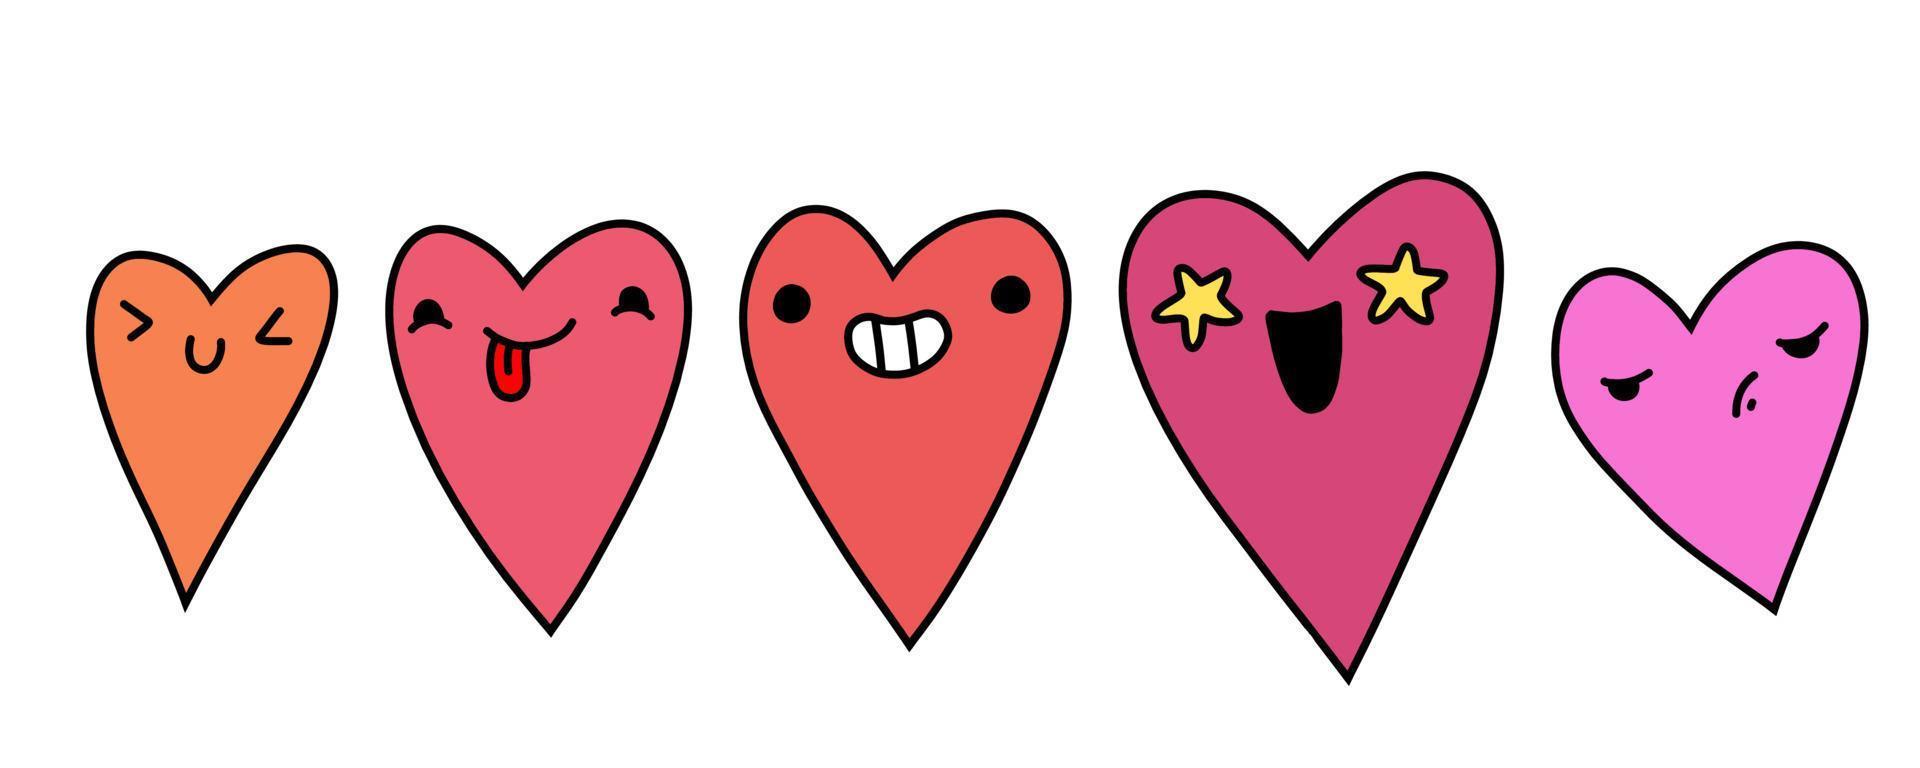 hjärta karaktär. tecknad hjärta emoji. lager vektor klistermärke platt illustration på en vit bakgrund.